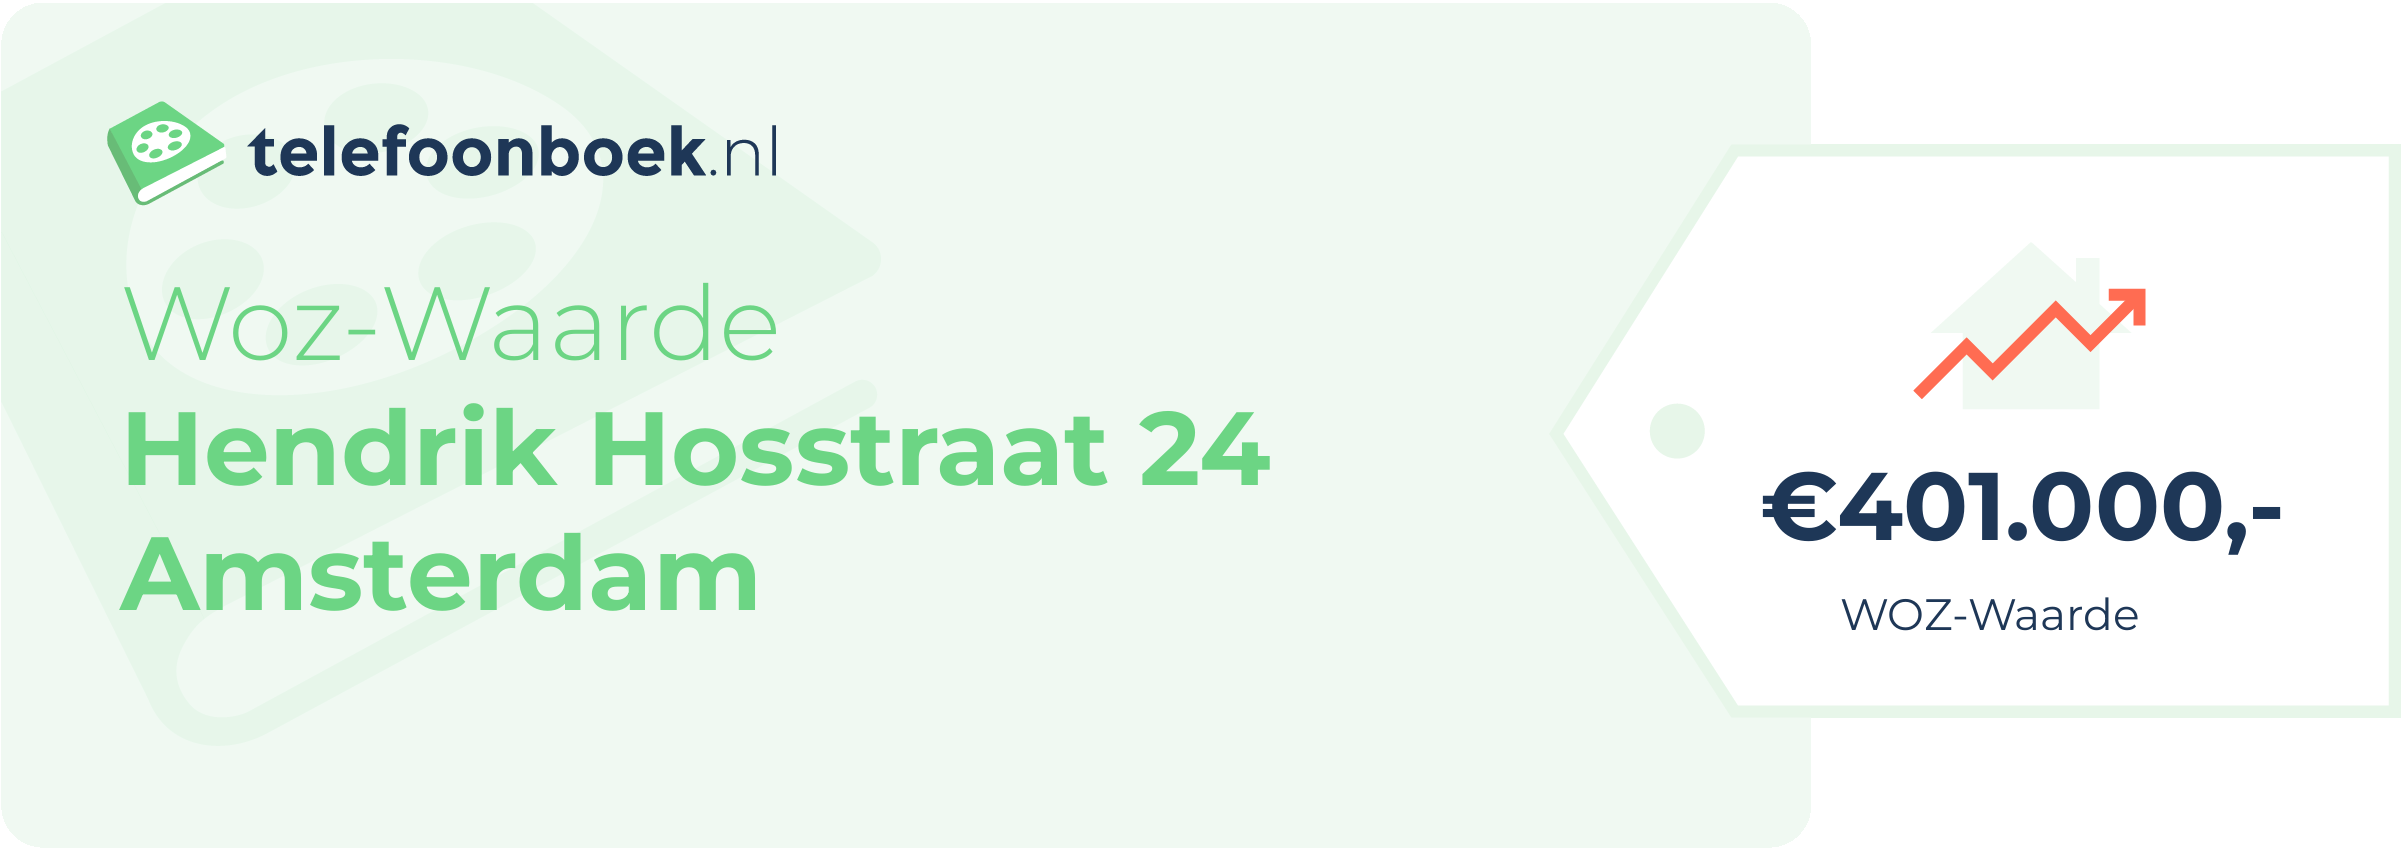 WOZ-waarde Hendrik Hosstraat 24 Amsterdam